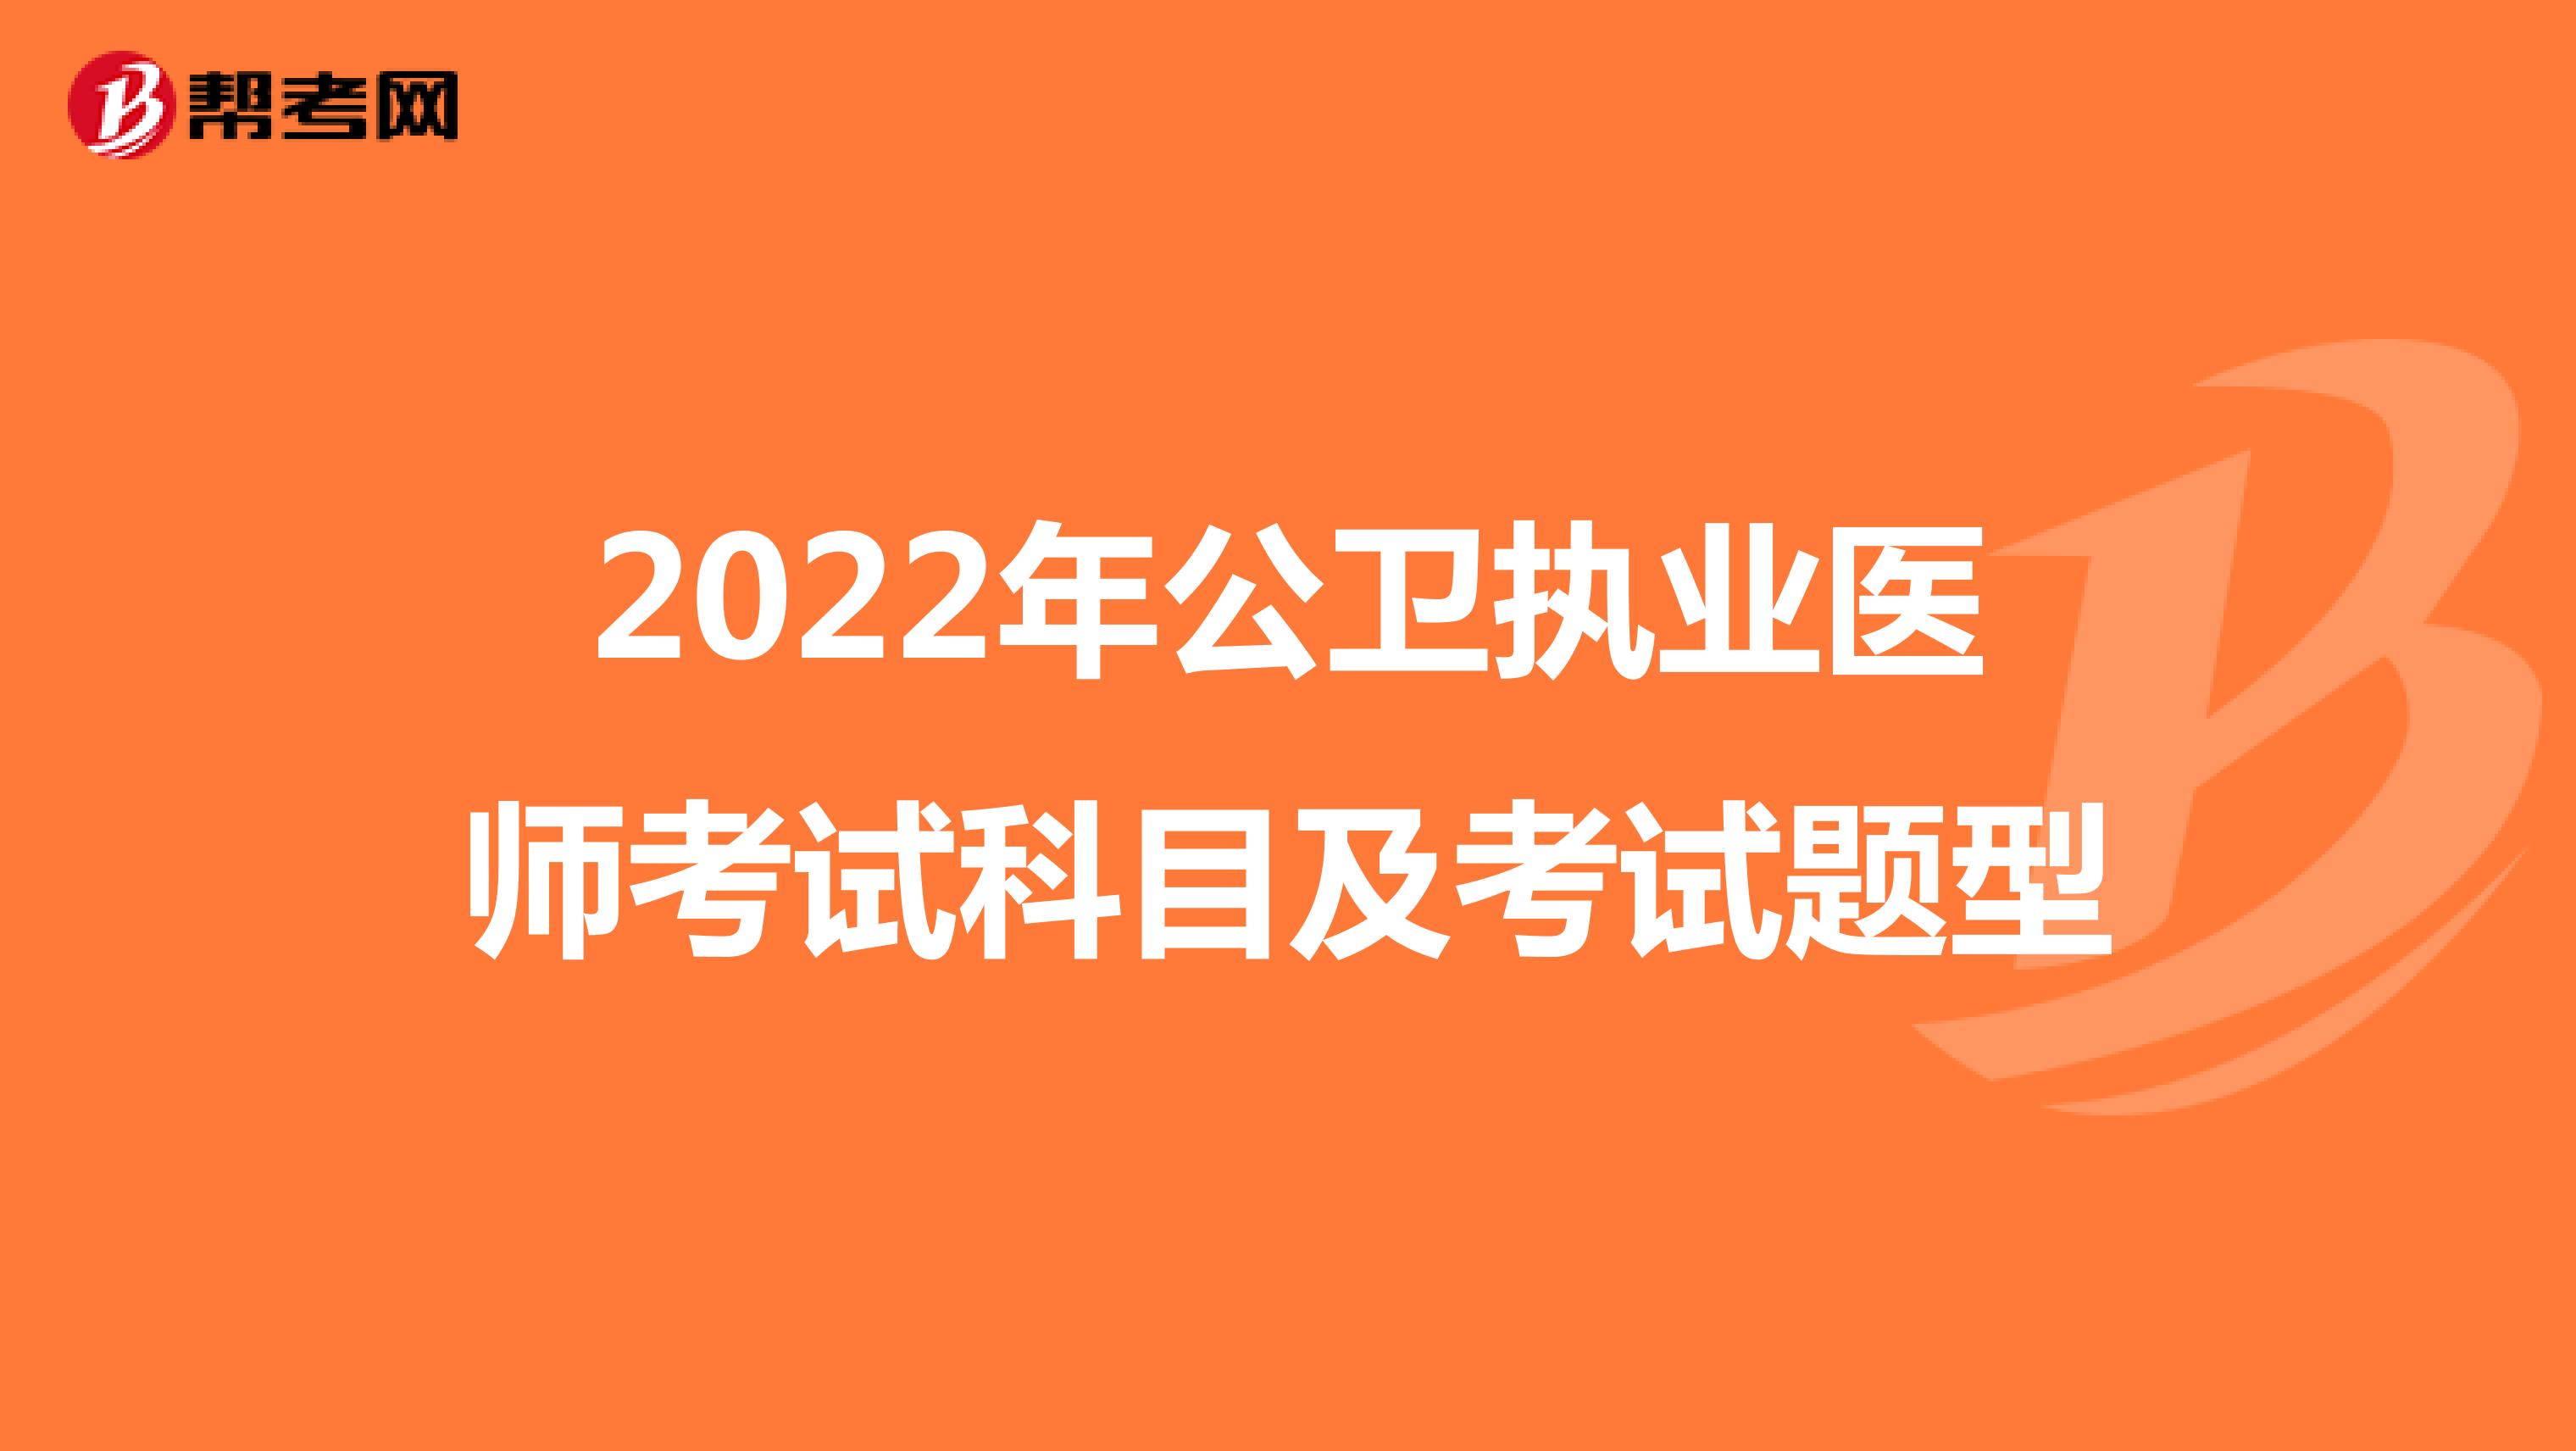 2022年公卫执业医师考试科目及考试题型